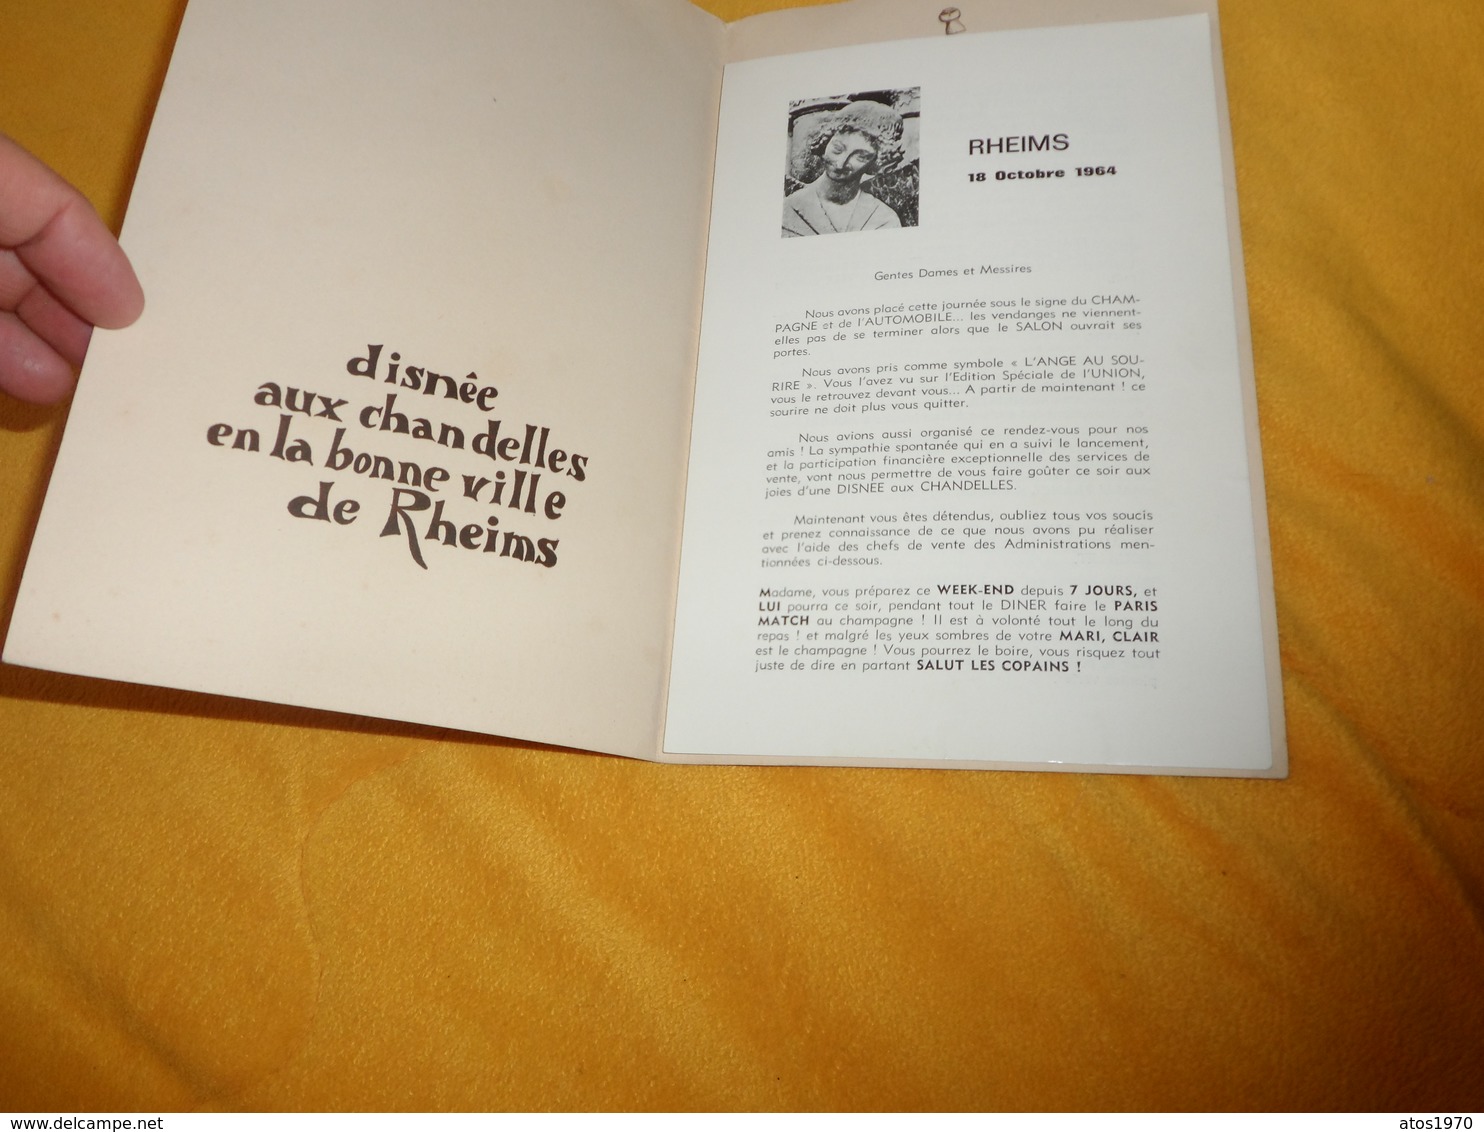 MENU DISNEE AUX CHANDELLES EN LA BONNE VILLE DE RHEIMS....REIMS LE 18 OCTOBRE 1964.. - Menus